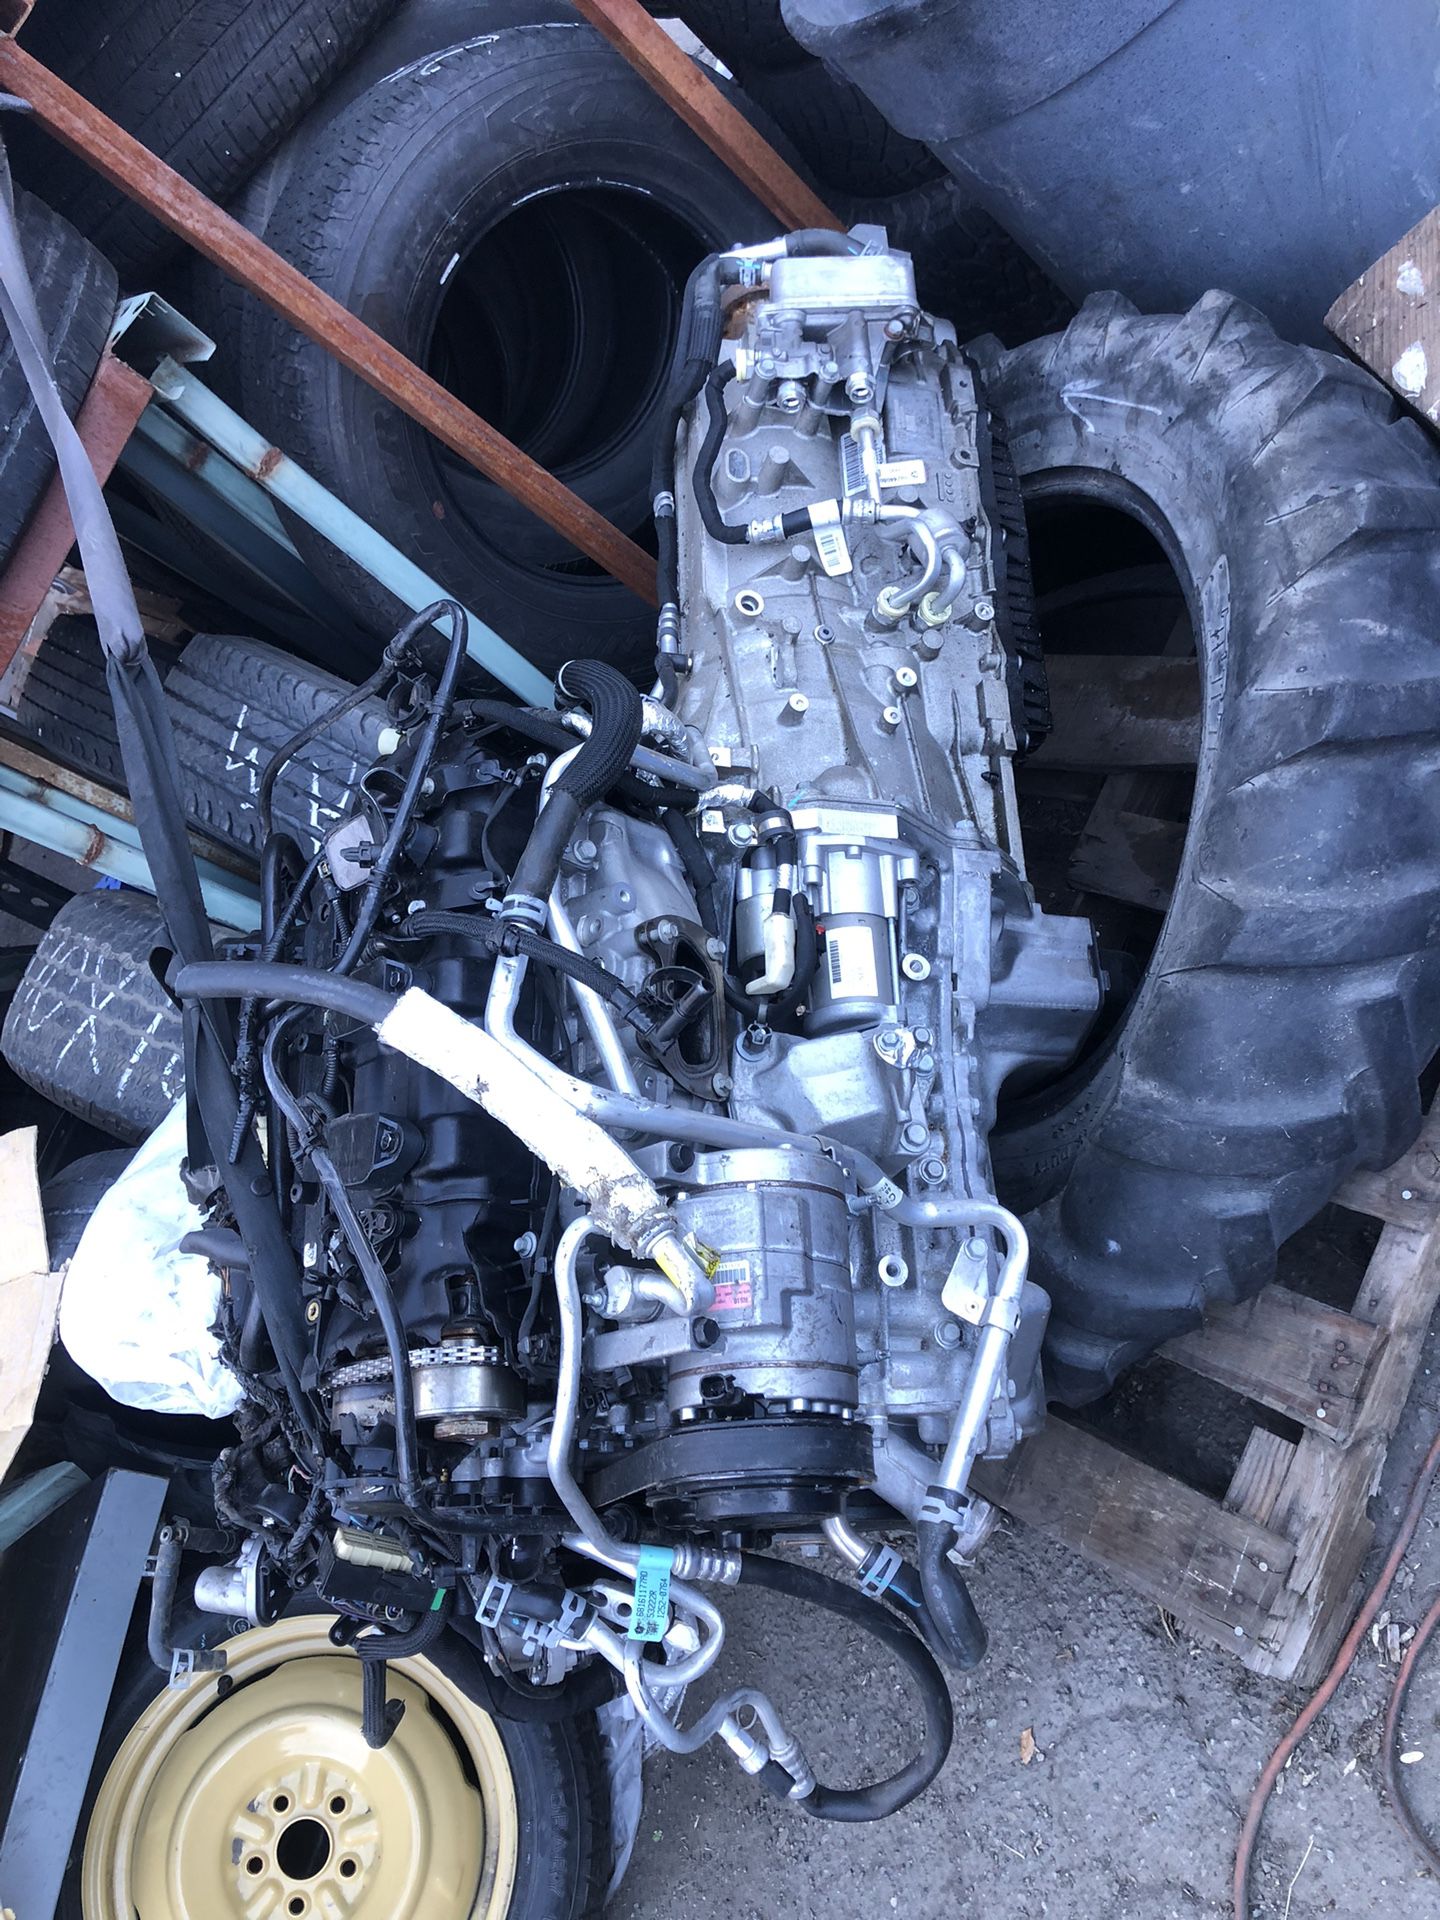 PACKAGE DEAL 2021 Jeep Cherokee V6 Motor N Transmisión N Rear End N 20” Wheels $3000 Parts